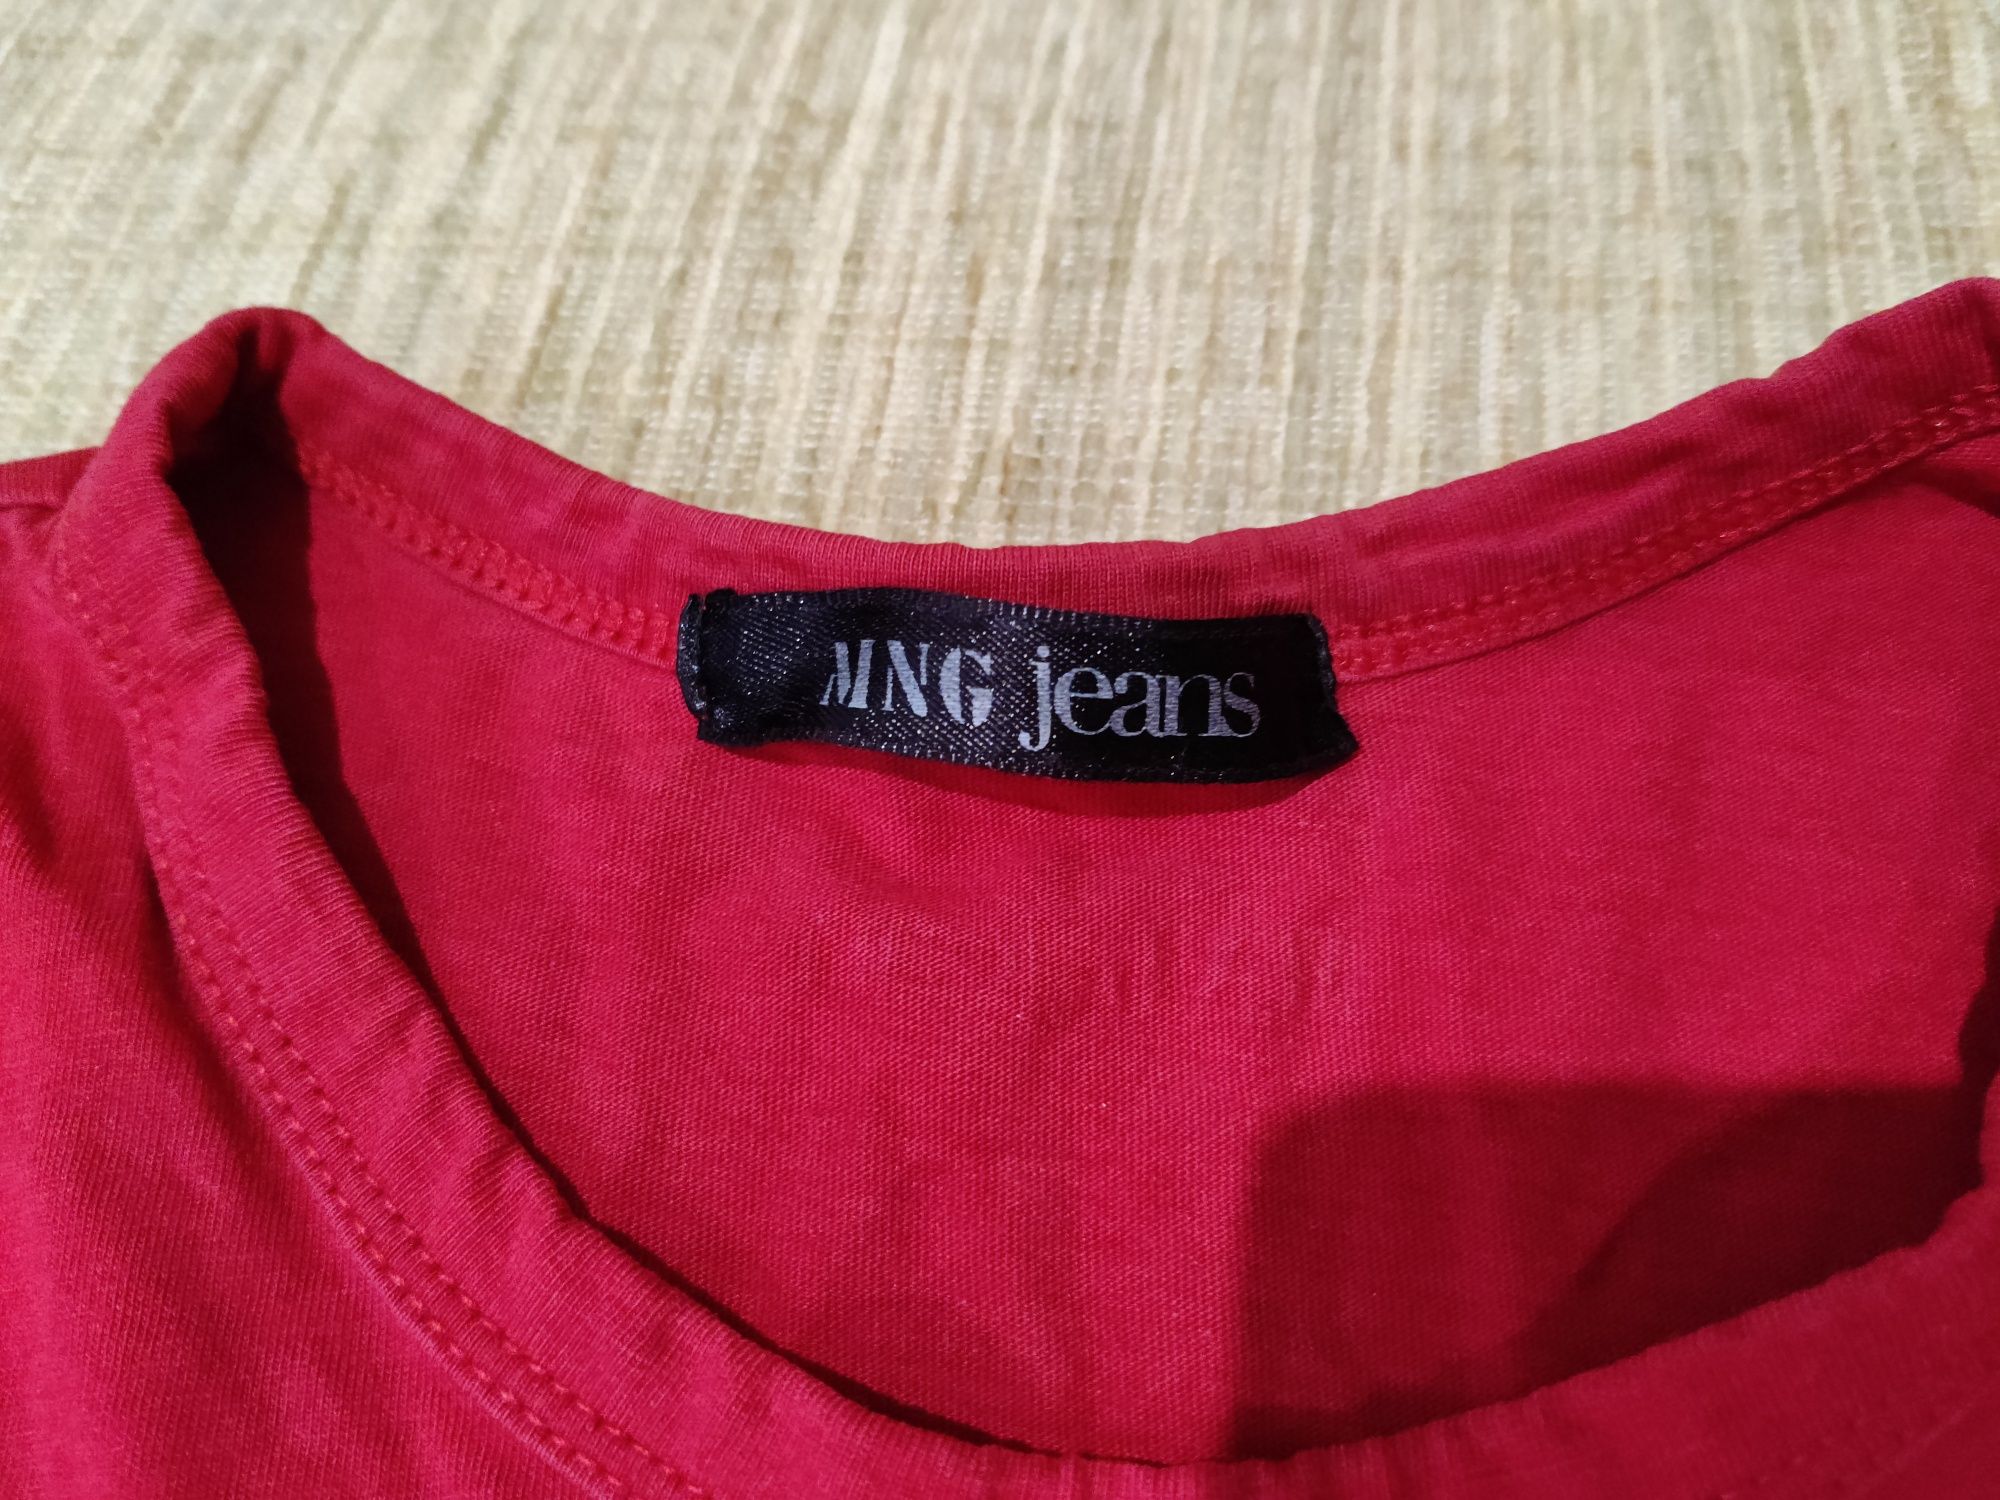 Красная женская футболка Mango с принтом граффити р.42 майка MNG jeans